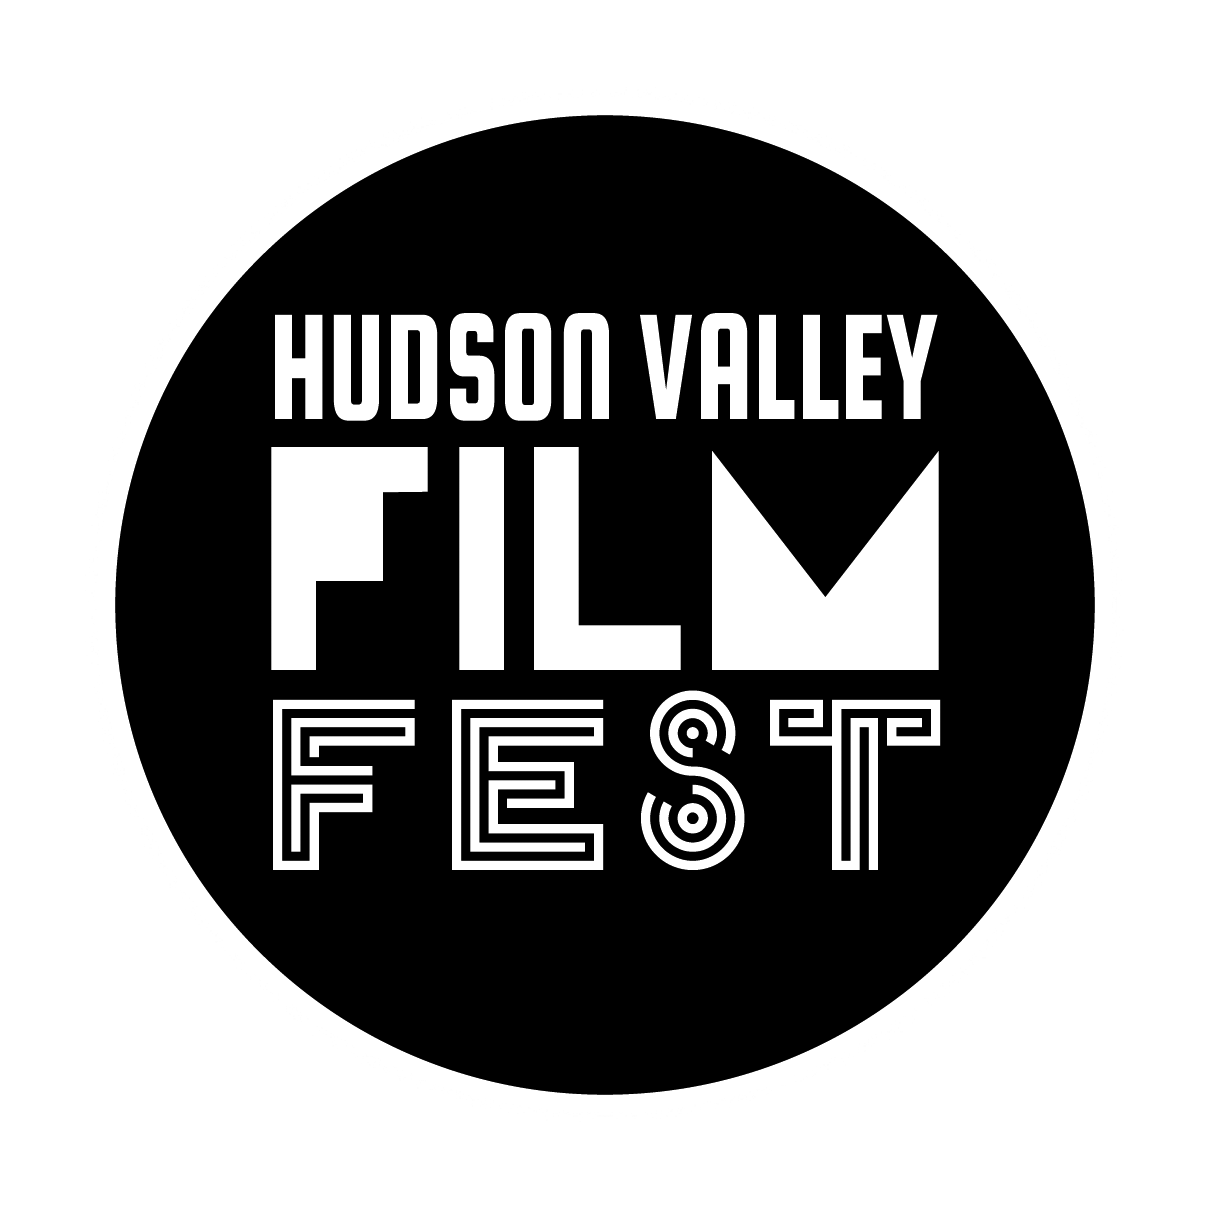 Hudson Valley Film Festival